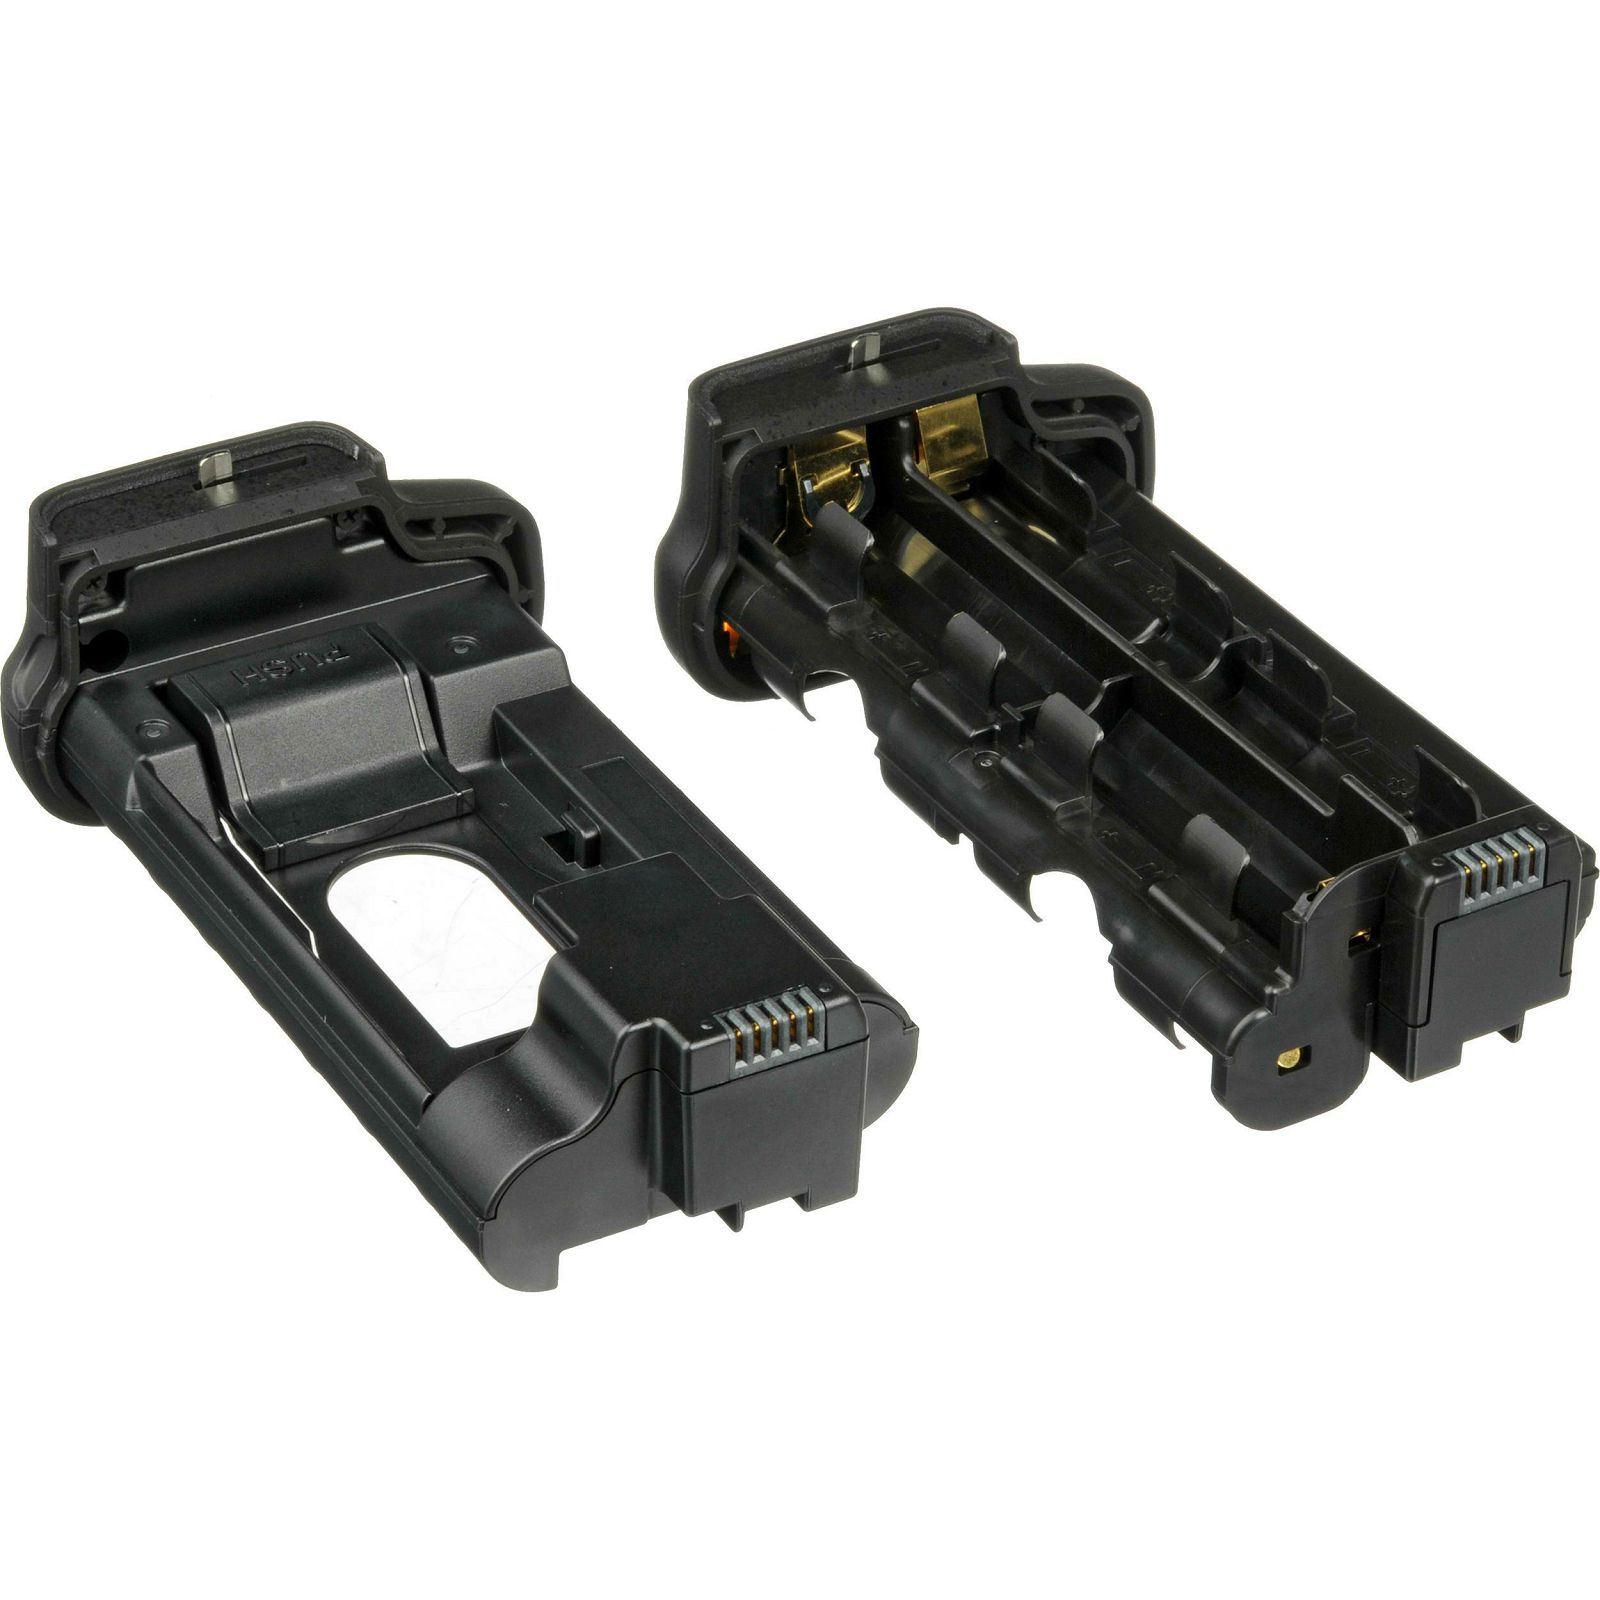 Nikon MB-N11 Multi-Power Battery Pack grip držač baterija za Z7 II i Z6 II (VFC00901)